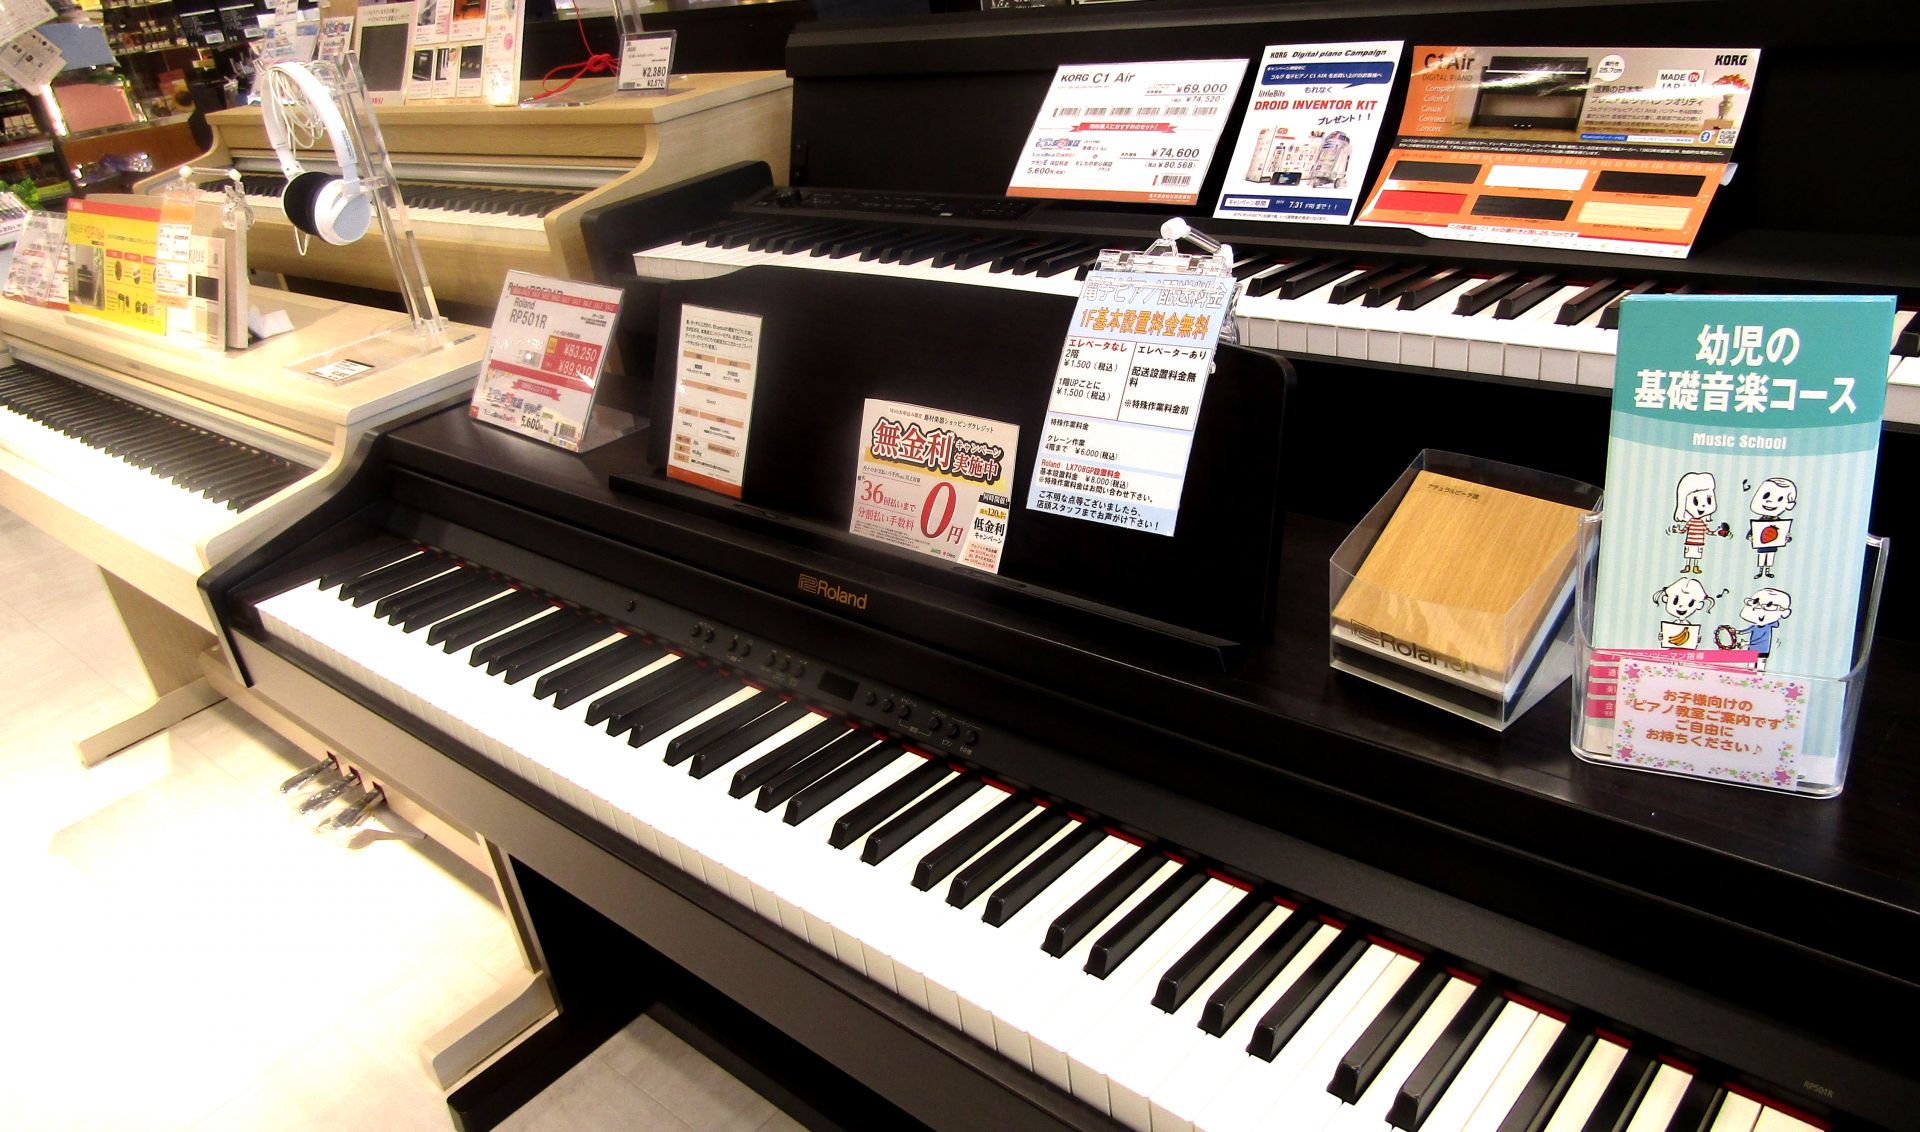 島村楽器パークプレイス大分店では、様々な電子ピアノを展示しております！]]初心者の方には少しでも分かりやすく、丁寧に楽器探しのお手伝いさせて頂きたいと思っております。]]ピアノを始めたい方、音量や時間を気にせずピアノを楽しみたいご経験者の方！ぜひ大分店で電子ピアノを選んでみませんか？お困りの際はお気 […]